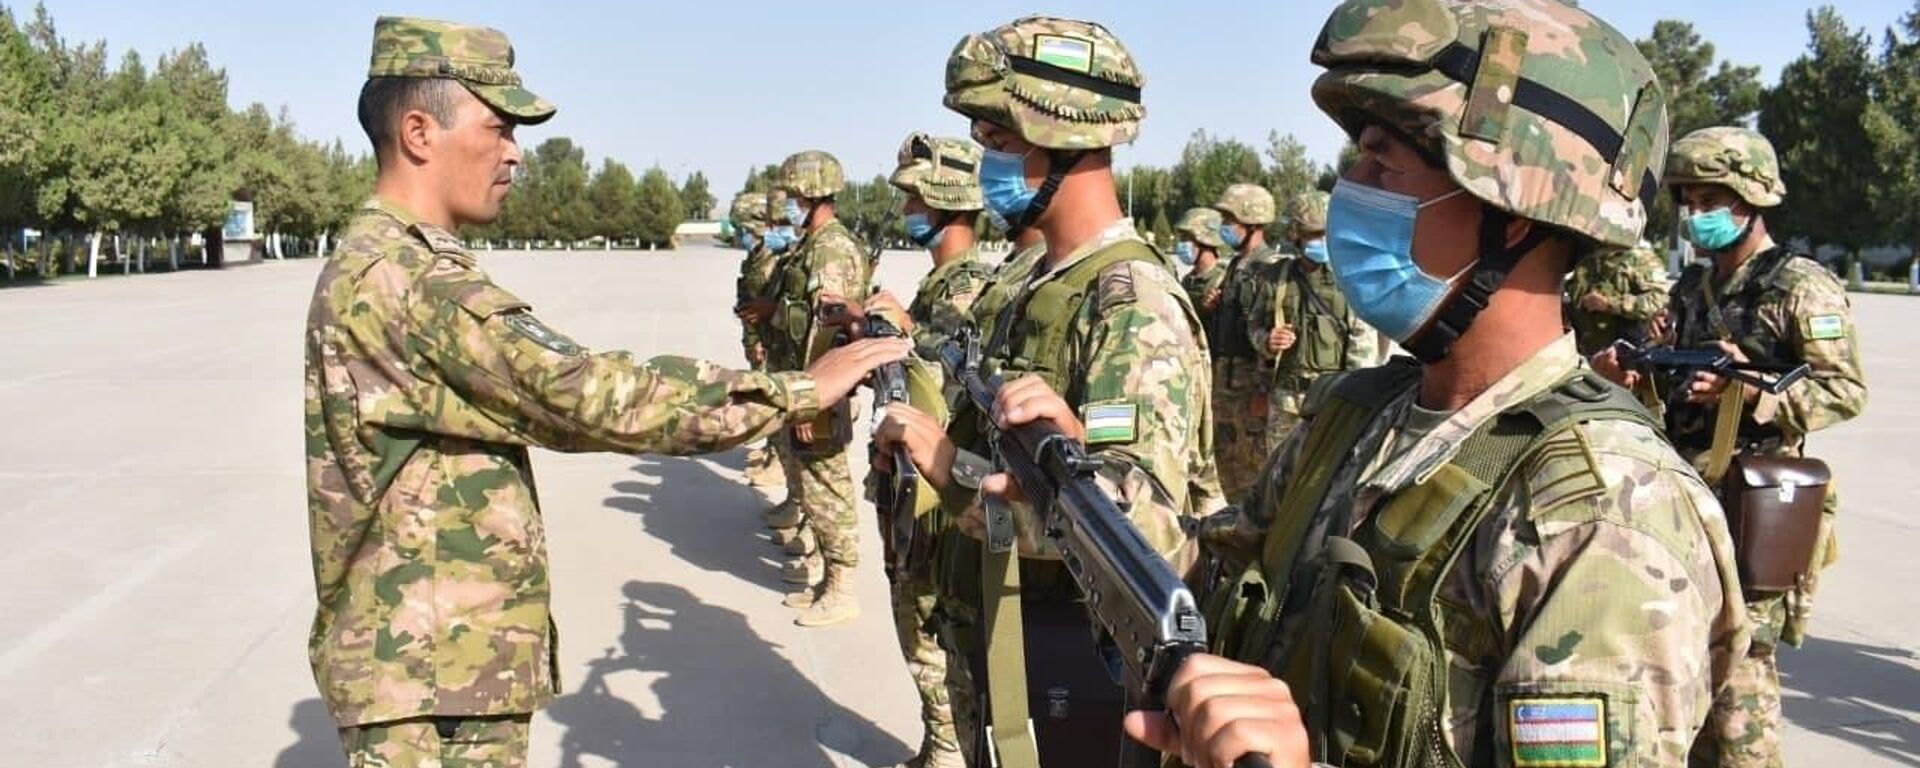 Силы ПВО Узбекистана проводят учения на границе с Афганистаном - Sputnik Узбекистан, 1920, 07.09.2021